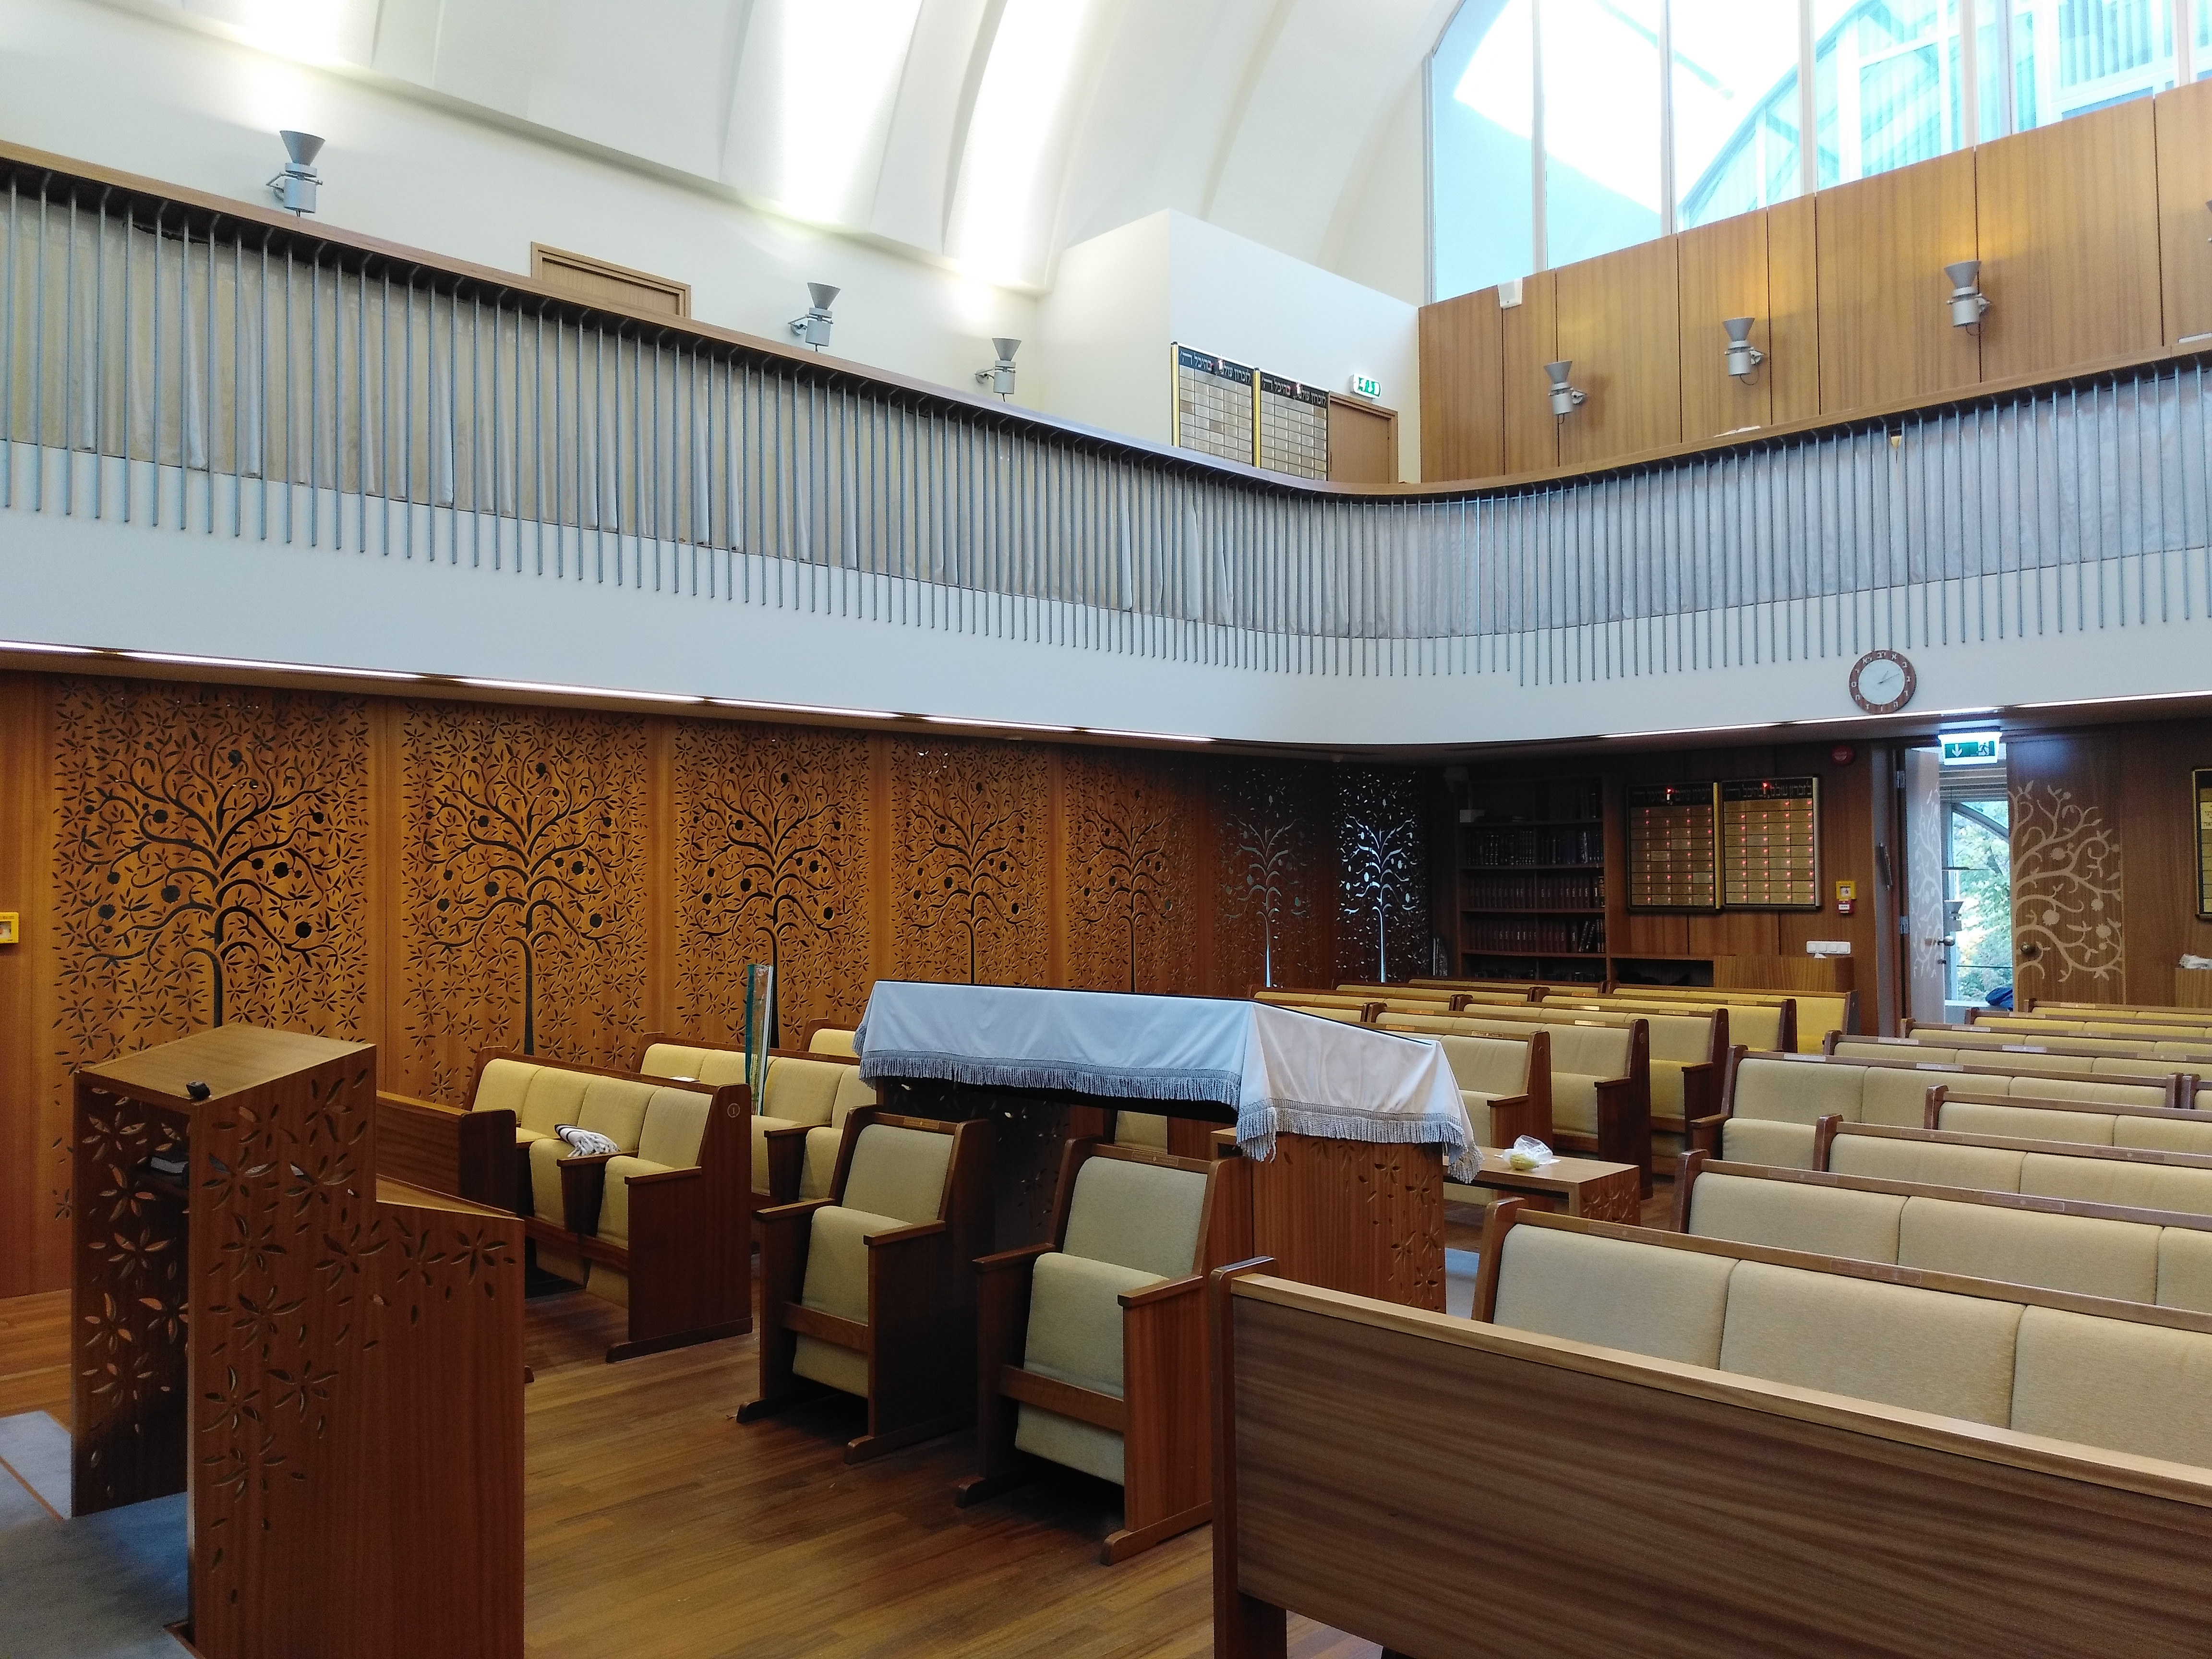 Таллин. Молельный зал синагоги